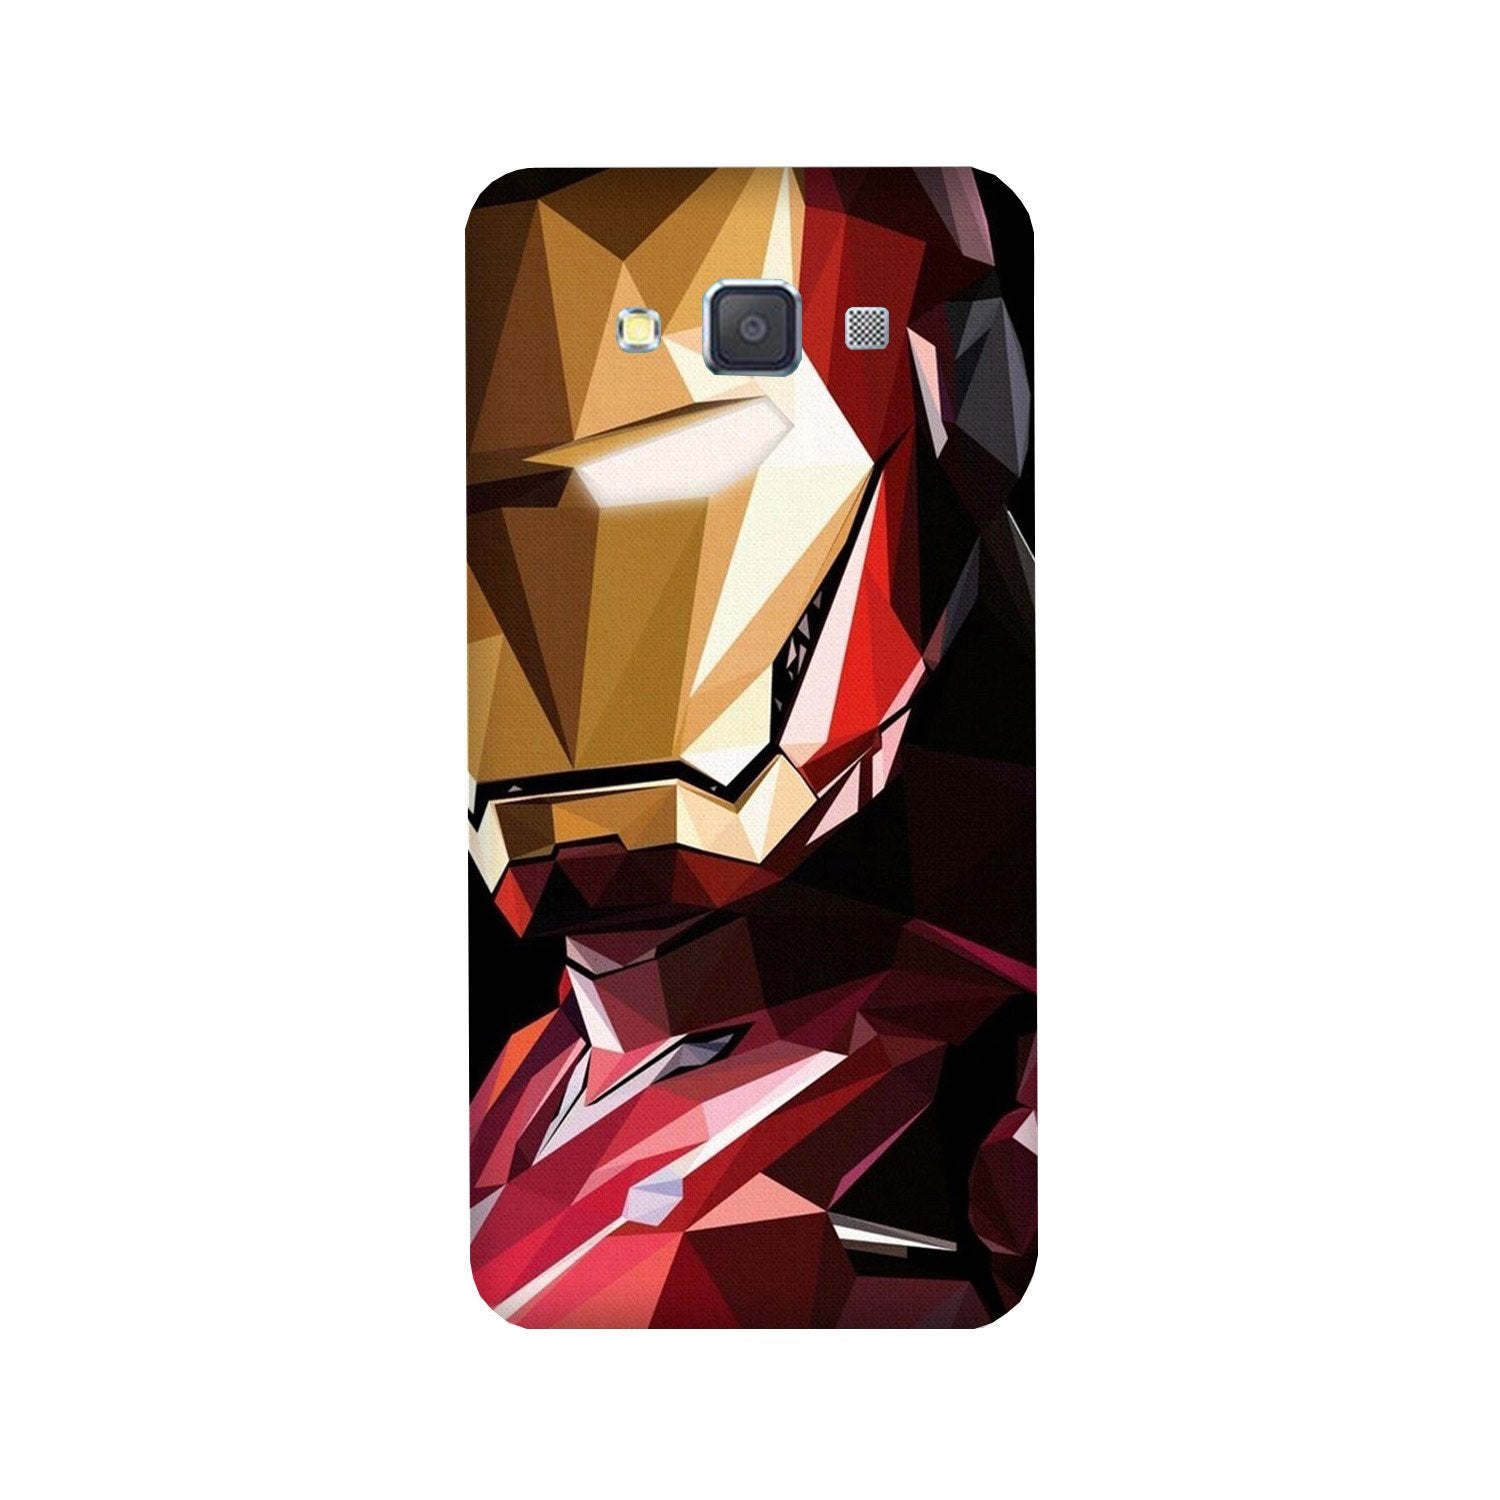 Iron Man Superhero Case for Galaxy Grand 2(Design - 122)